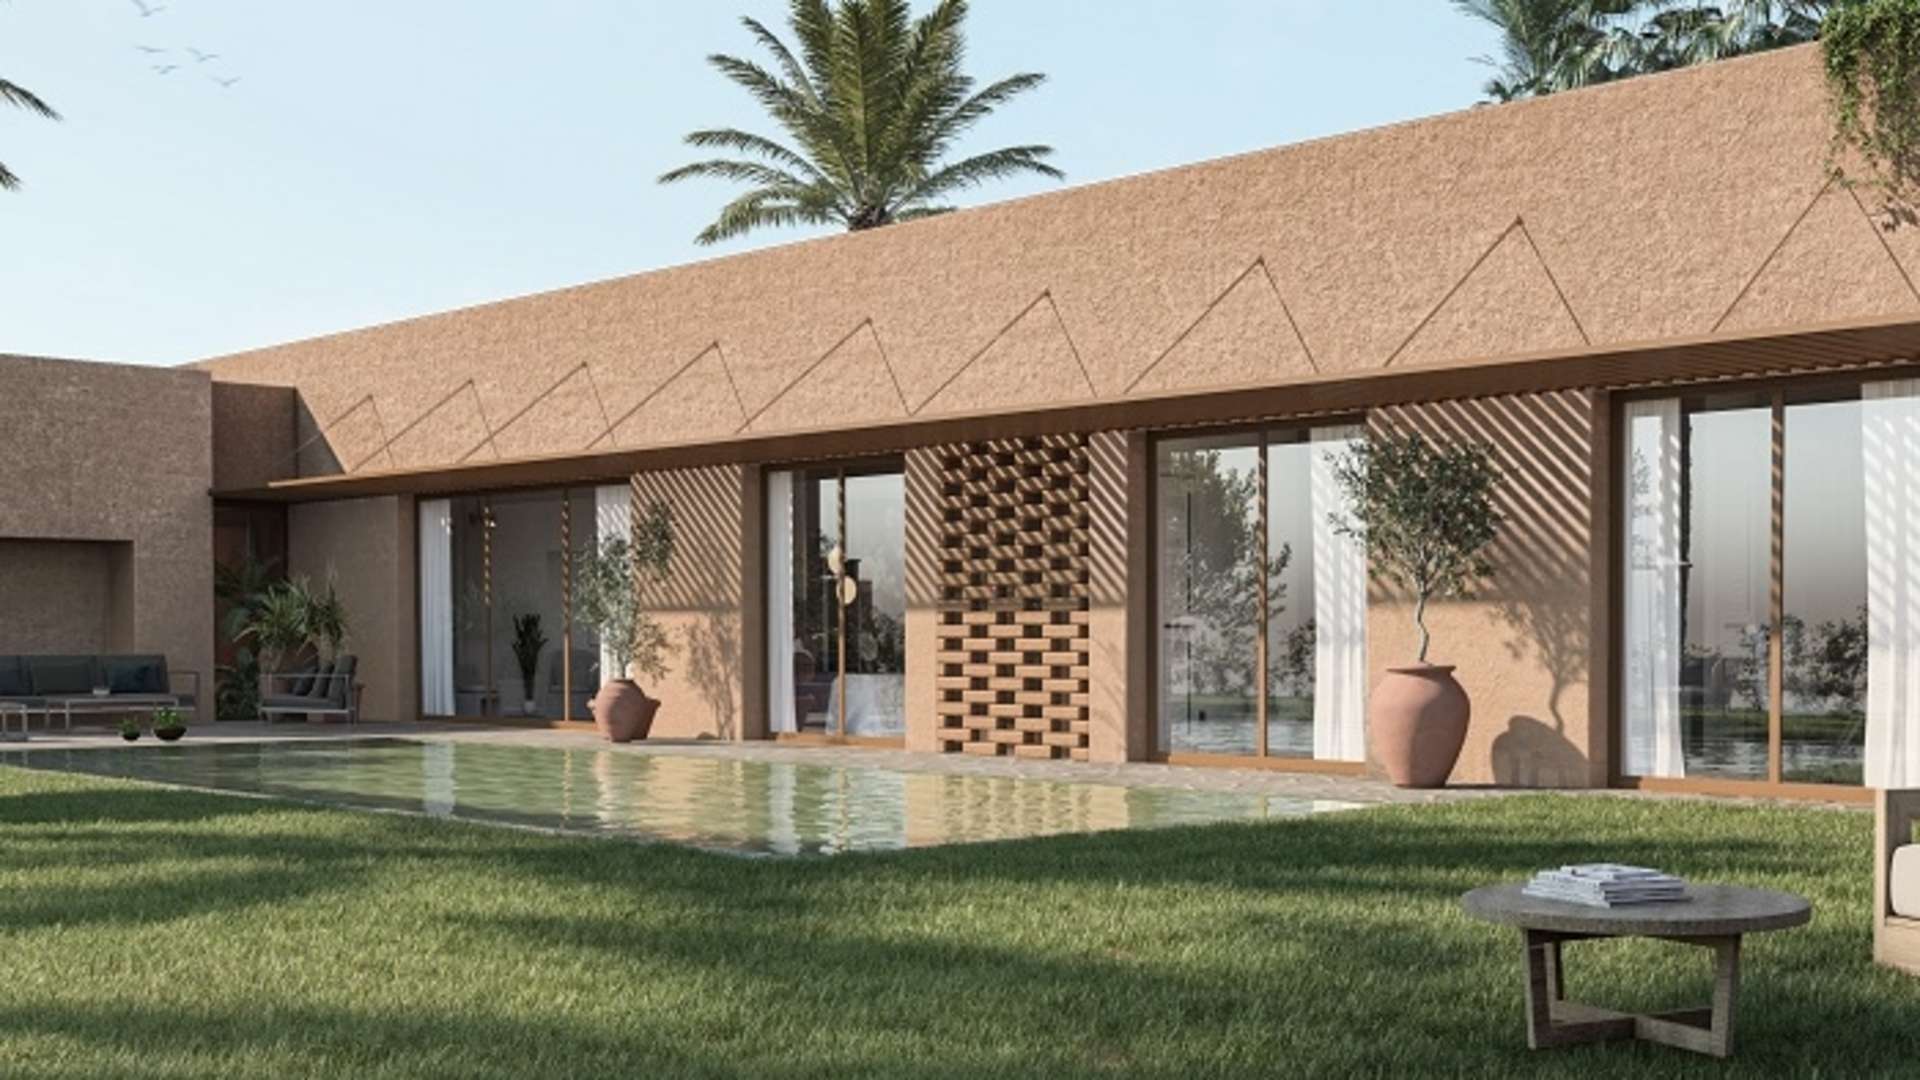 Vente,Villa,Découvrez notre nouveau projet immobilier exclusif : Villas de Plain-Pied sur la route de l'Ourika,Marrakech,Route de l'Ourika